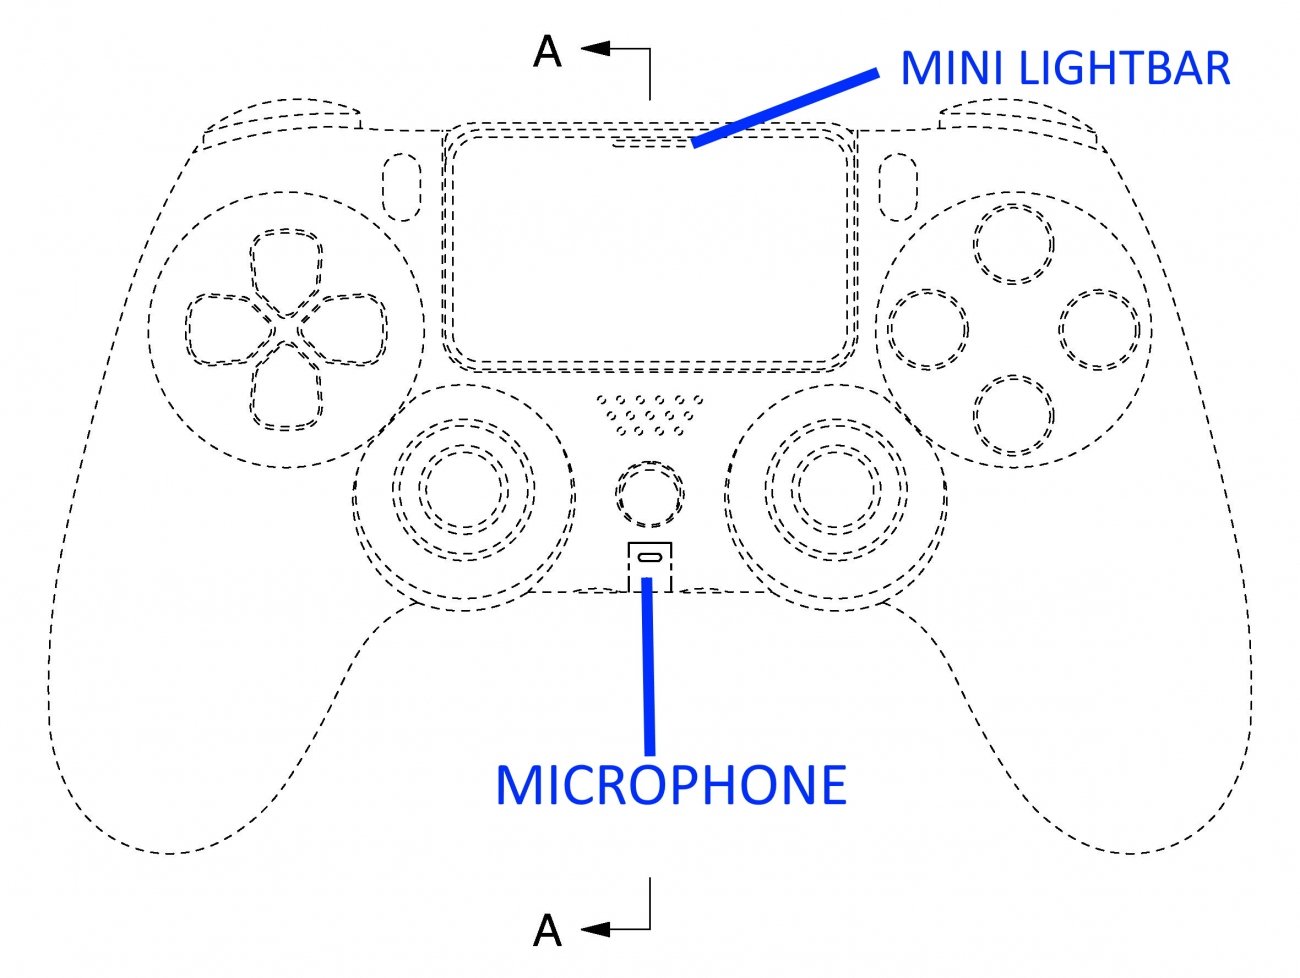 68806_90_ps5 controller built mic usb lightbar ergonomic design_full